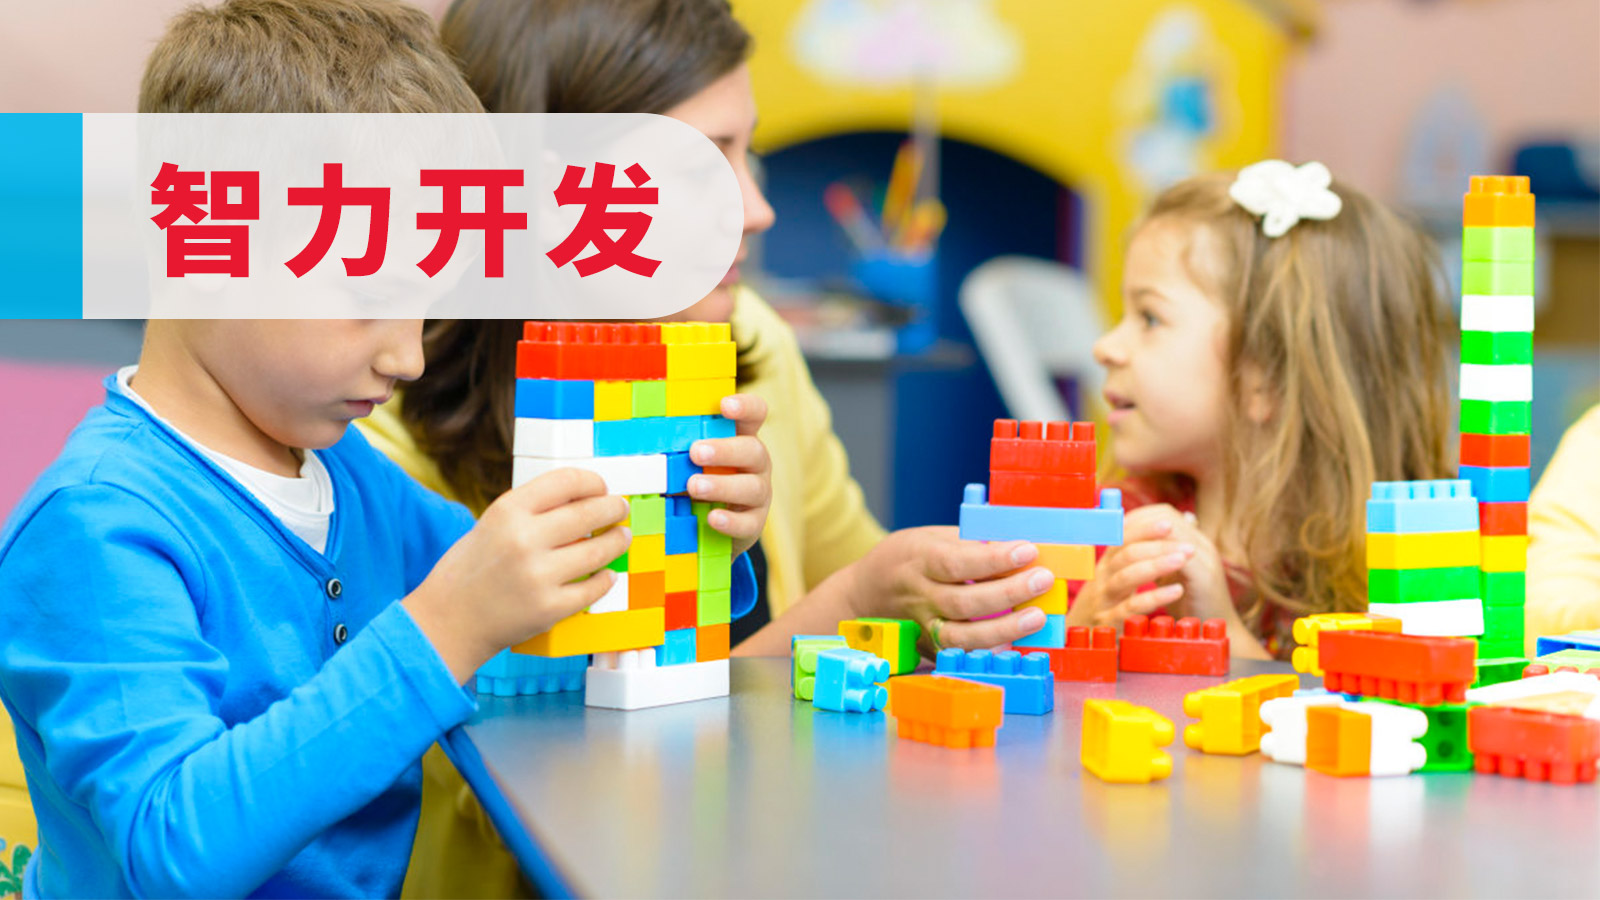 上海森孚机器人教育3-6岁幼儿STEM图片